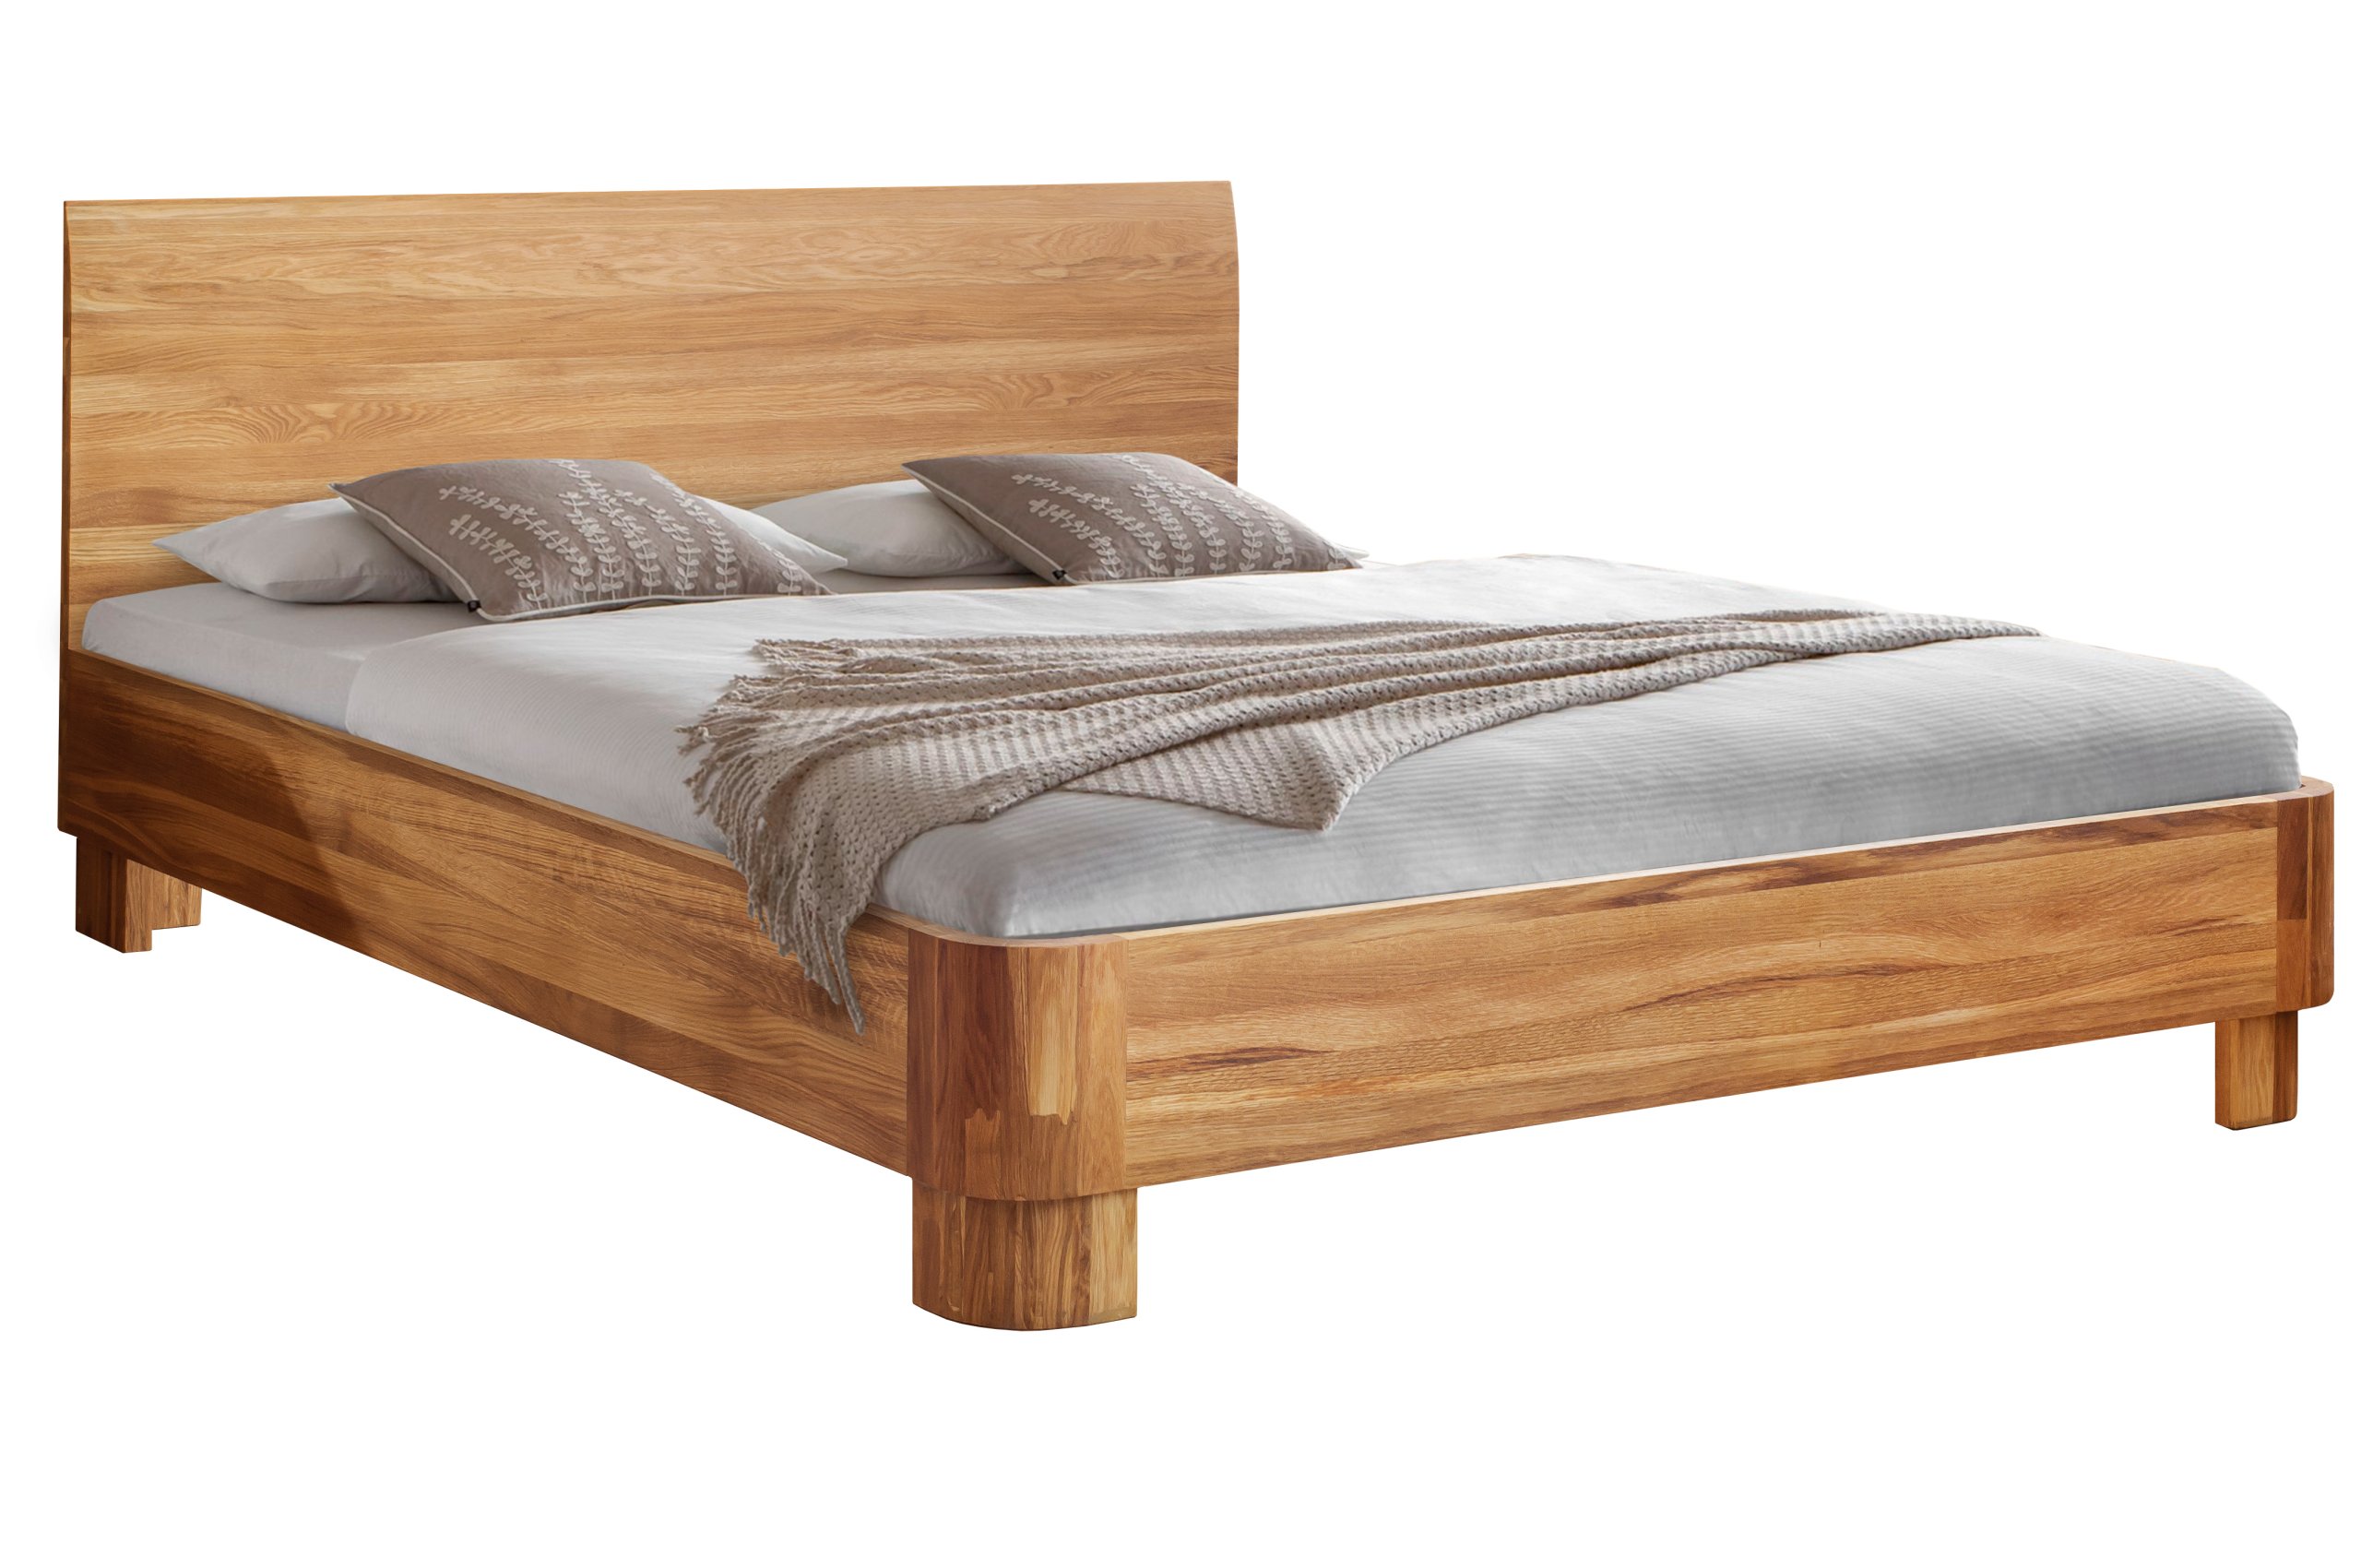 Купить кровать из массива в спб. Кровать Лозанна массив дуба. Лозанна дуб кровать 160. Кровать Аскона из массива. Аскона кровать деревянная.